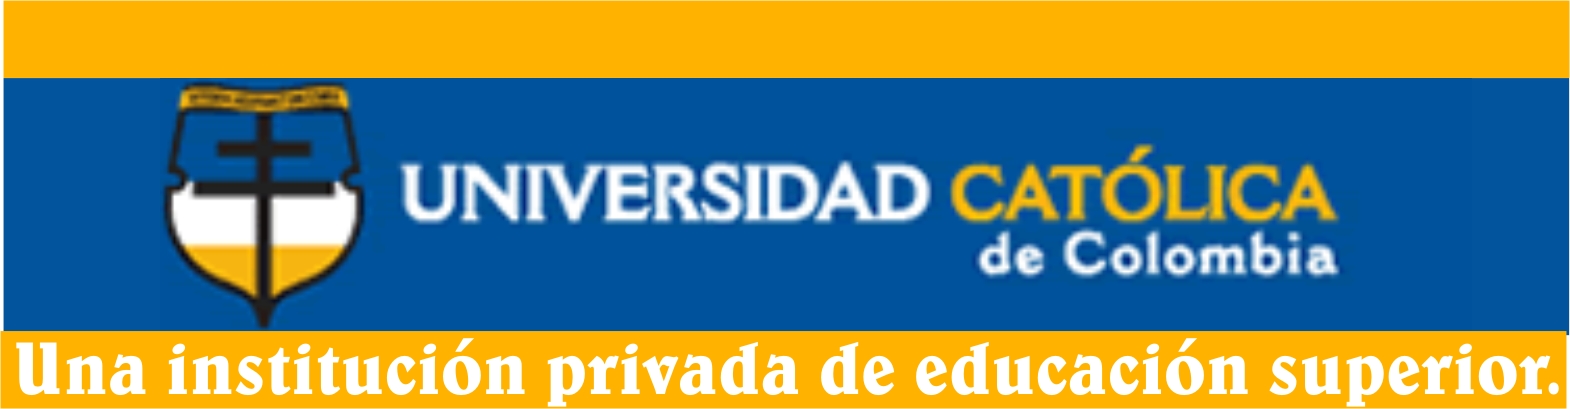 Universidad Católica de colombia Logo photo - 1